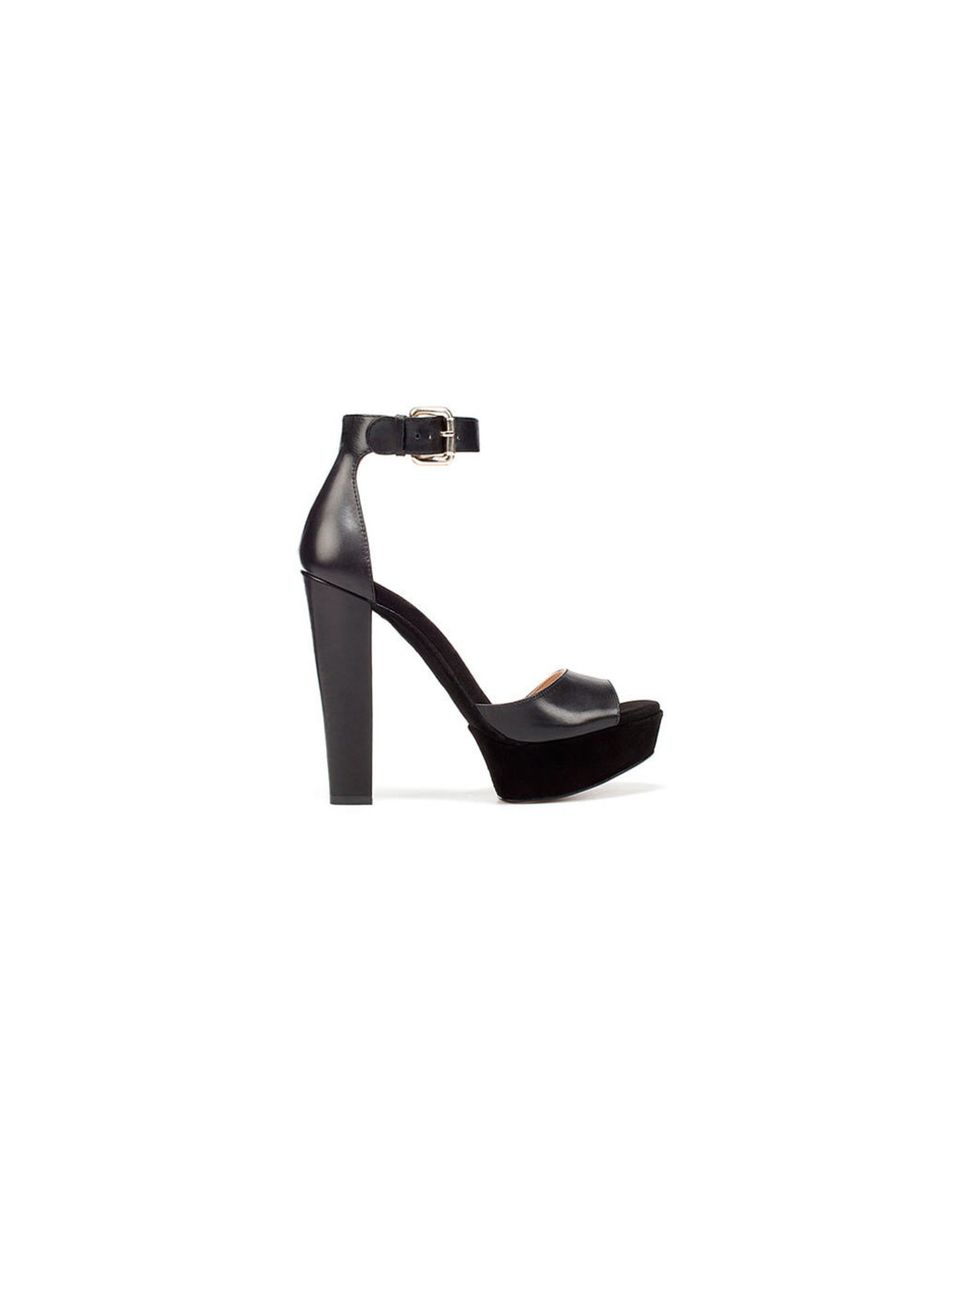 <p><a href="http://www.zara.com/webapp/wcs/stores/servlet/product/uk/en/zara-W2011-r/163405/632955/PLATFORM%2BSANDAL">Zara</a> platform sandals, £59.99</p>